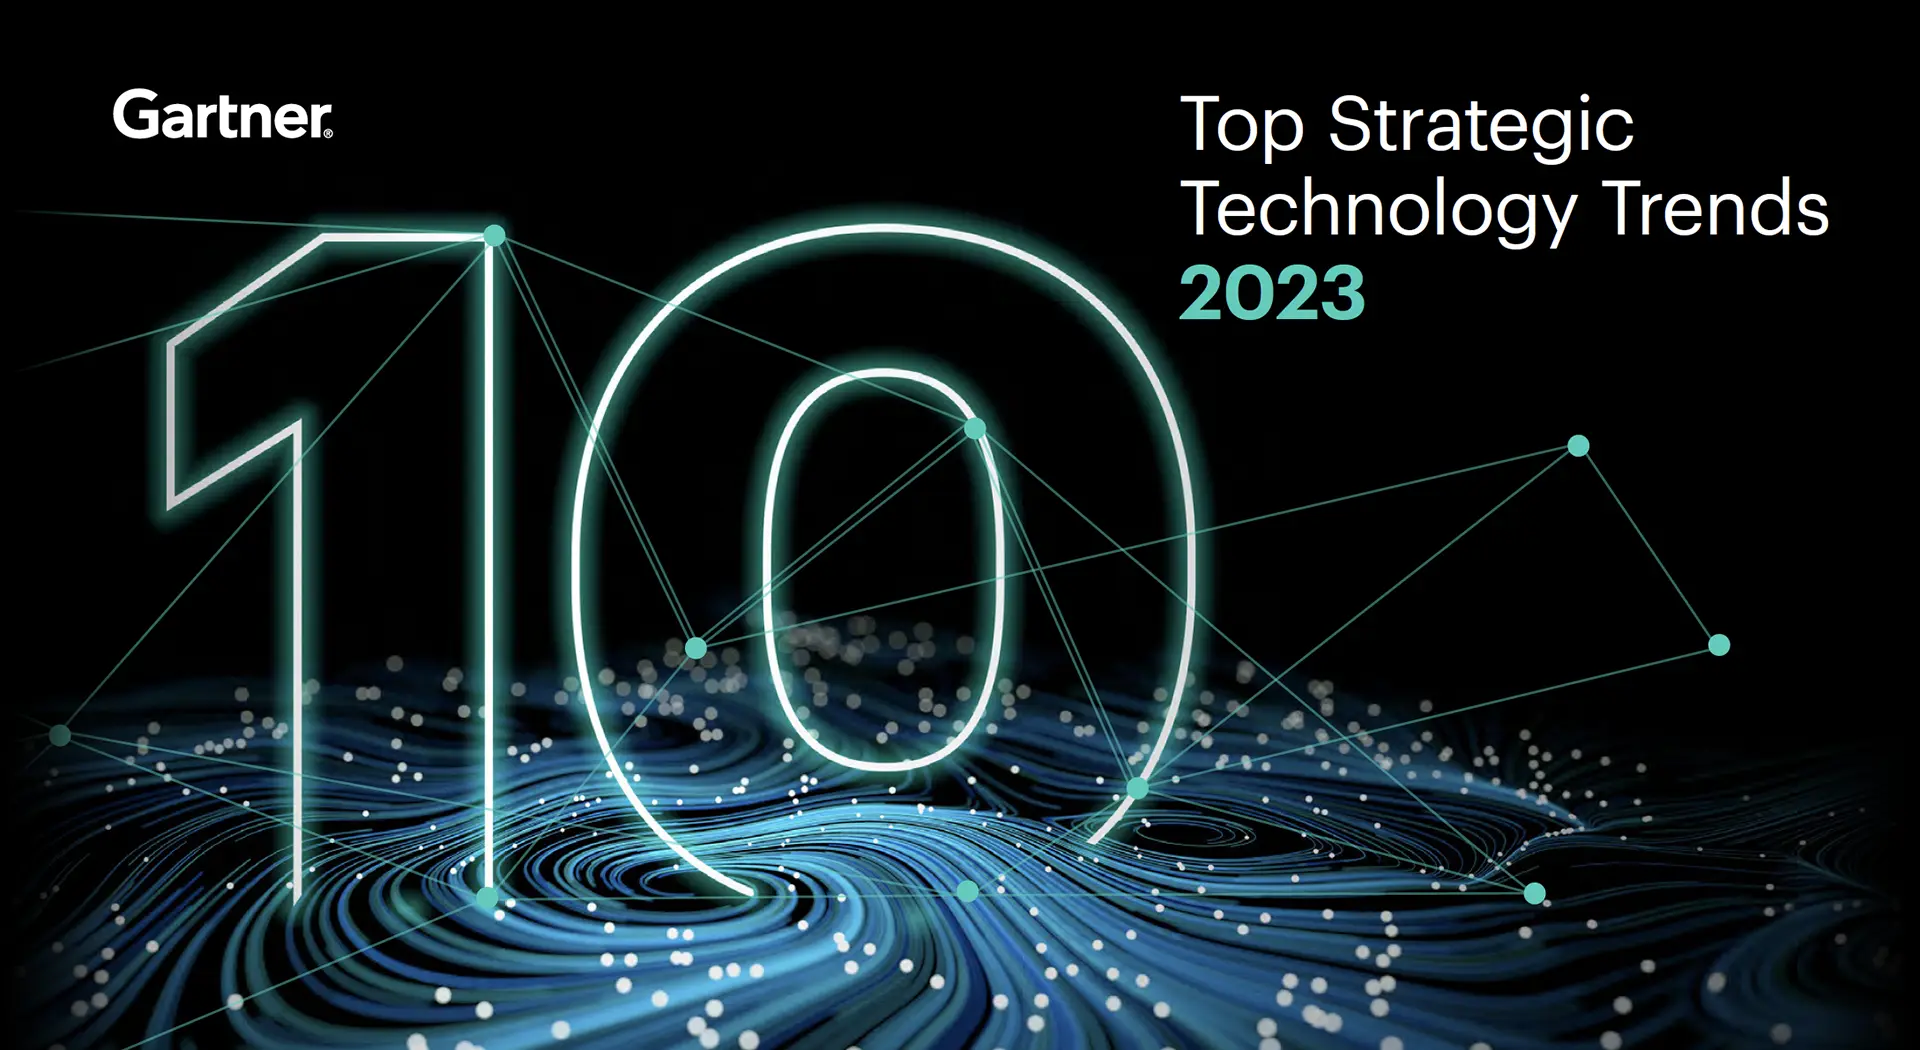 Gartner's 2023 Top Strategic Technology Trends